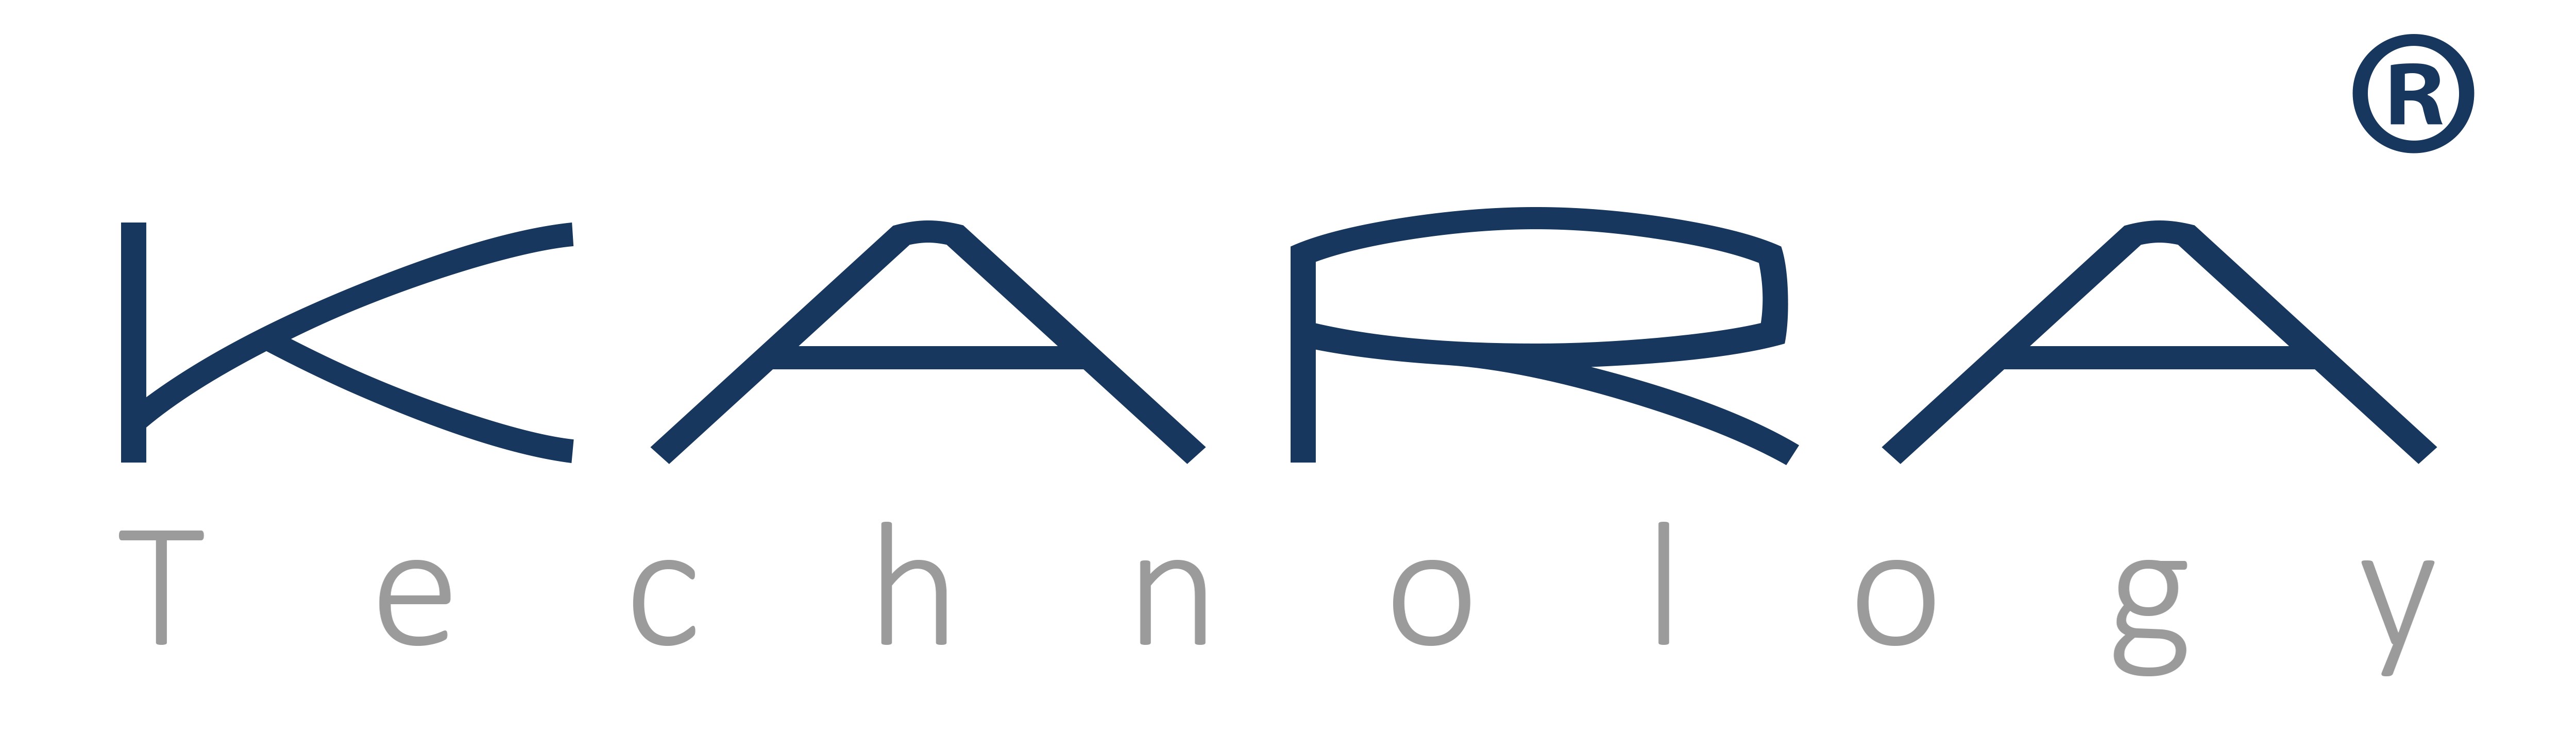 kara techonology logo